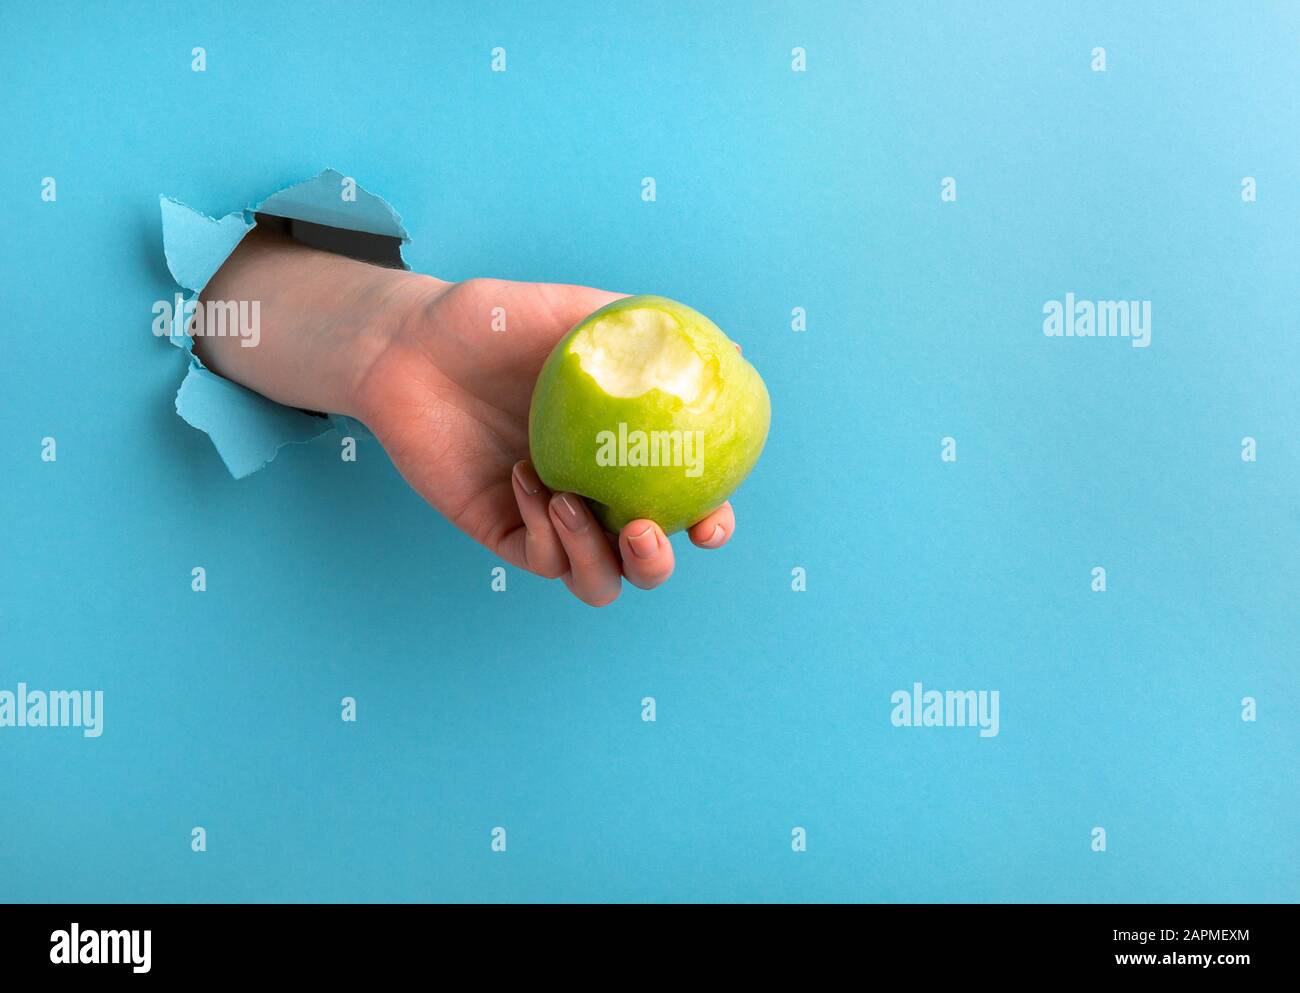 La mano di una donna tiene una mela bitten attraverso un buco nella carta su uno sfondo blu. Spazio di copia Foto Stock